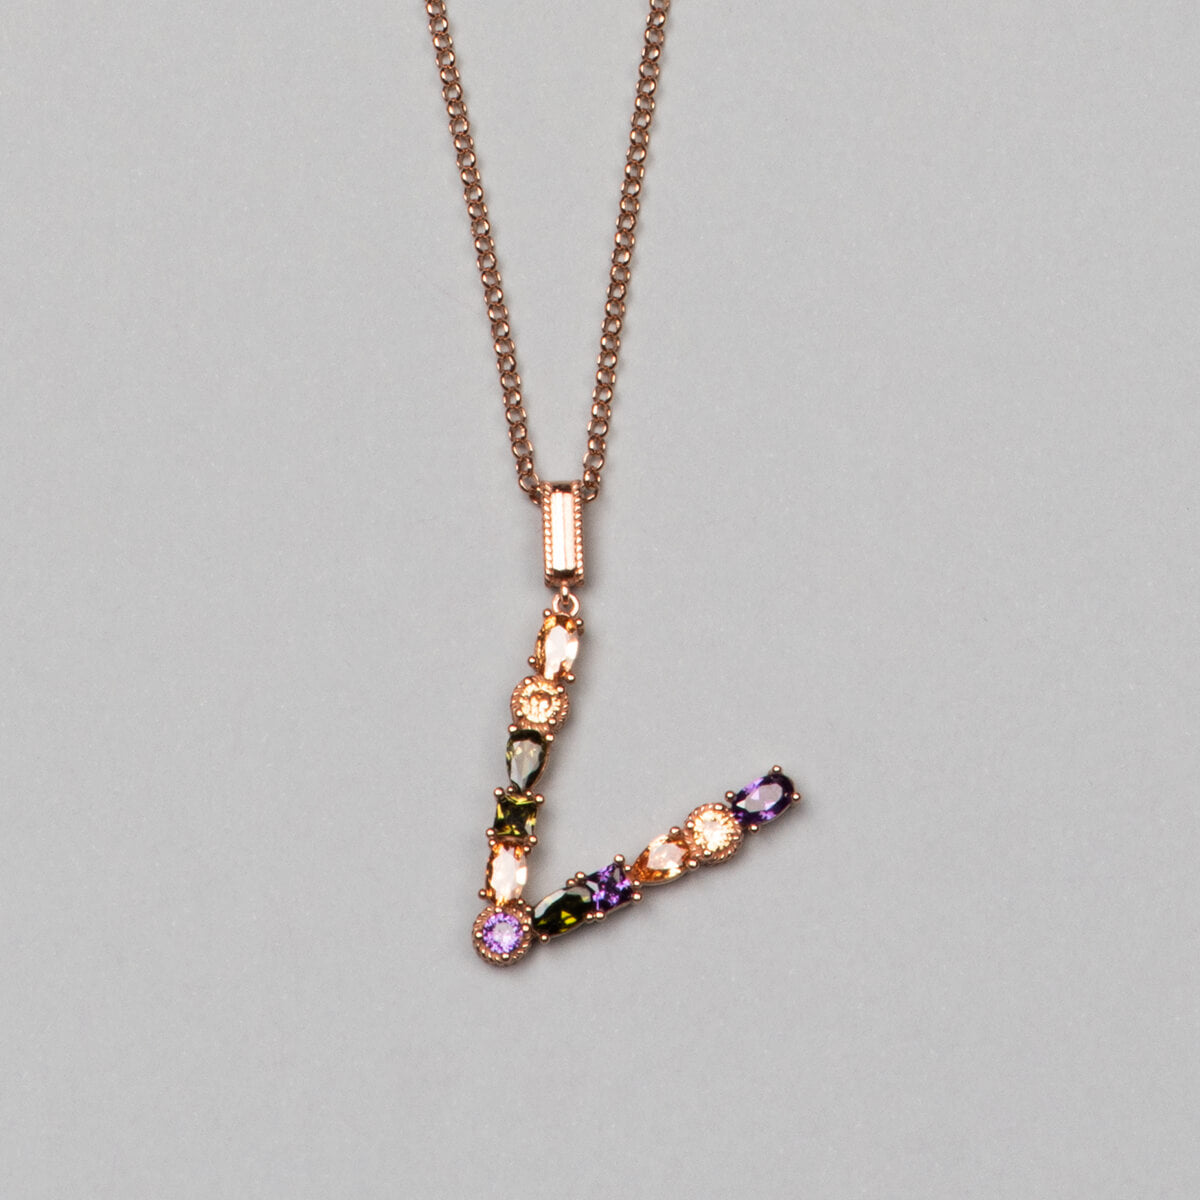 ‘V’ letter pendant necklace. 925 sterling silver, 18K rose gold plated.